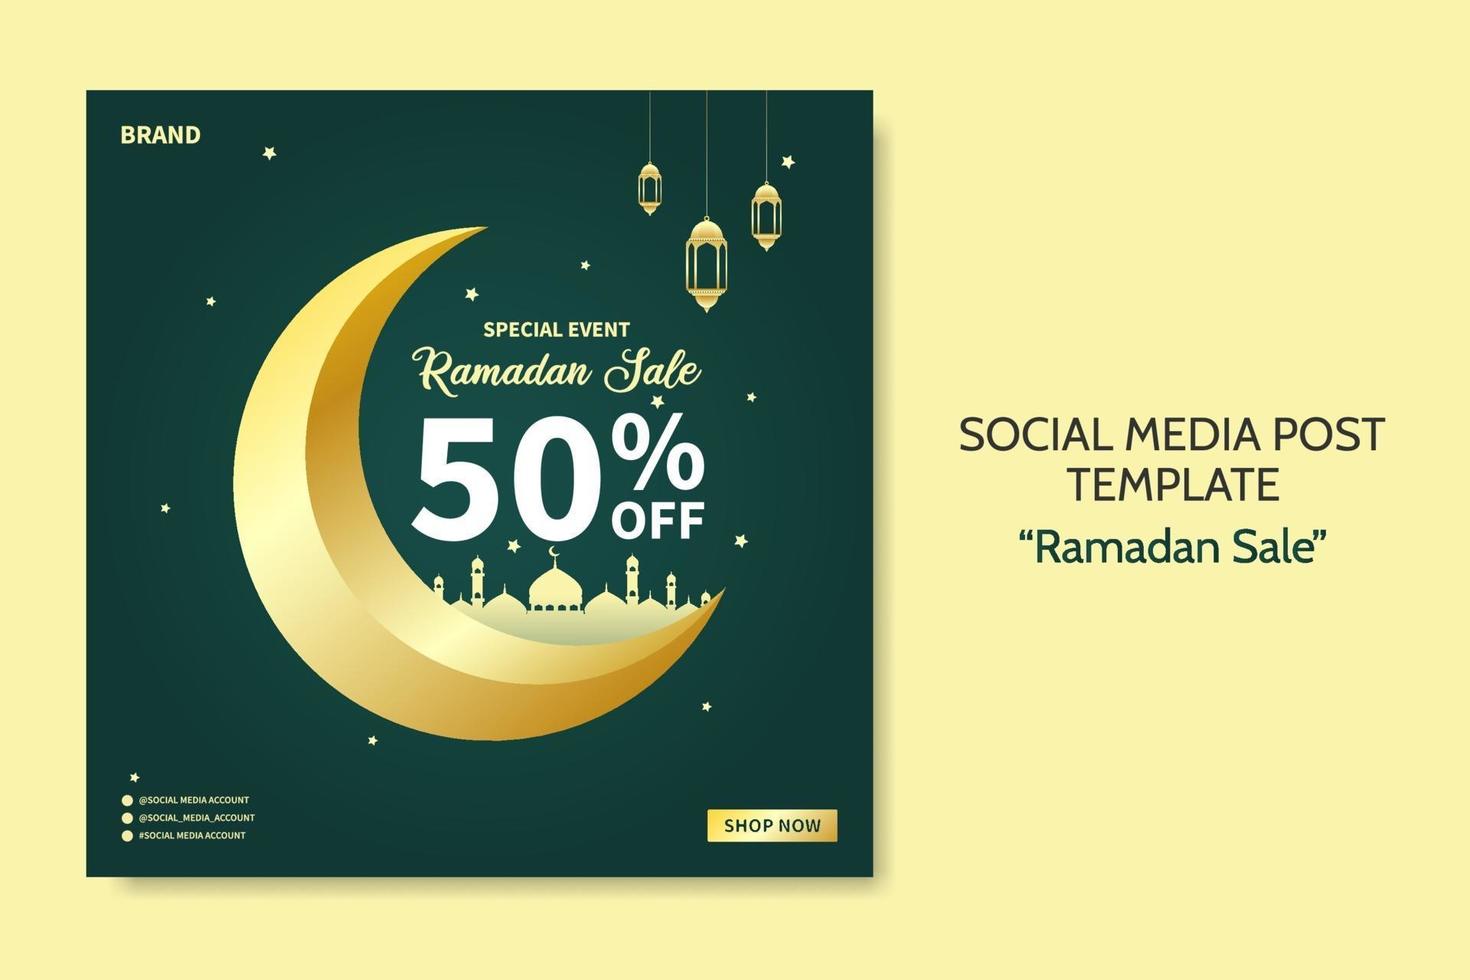 Ramadan Verkauf Social Media Post Vorlage. Web-Bannerwerbung mit grünem und goldenem Farbstil für Grußkarte, Gutschein, islamisches Ereignis. vektor